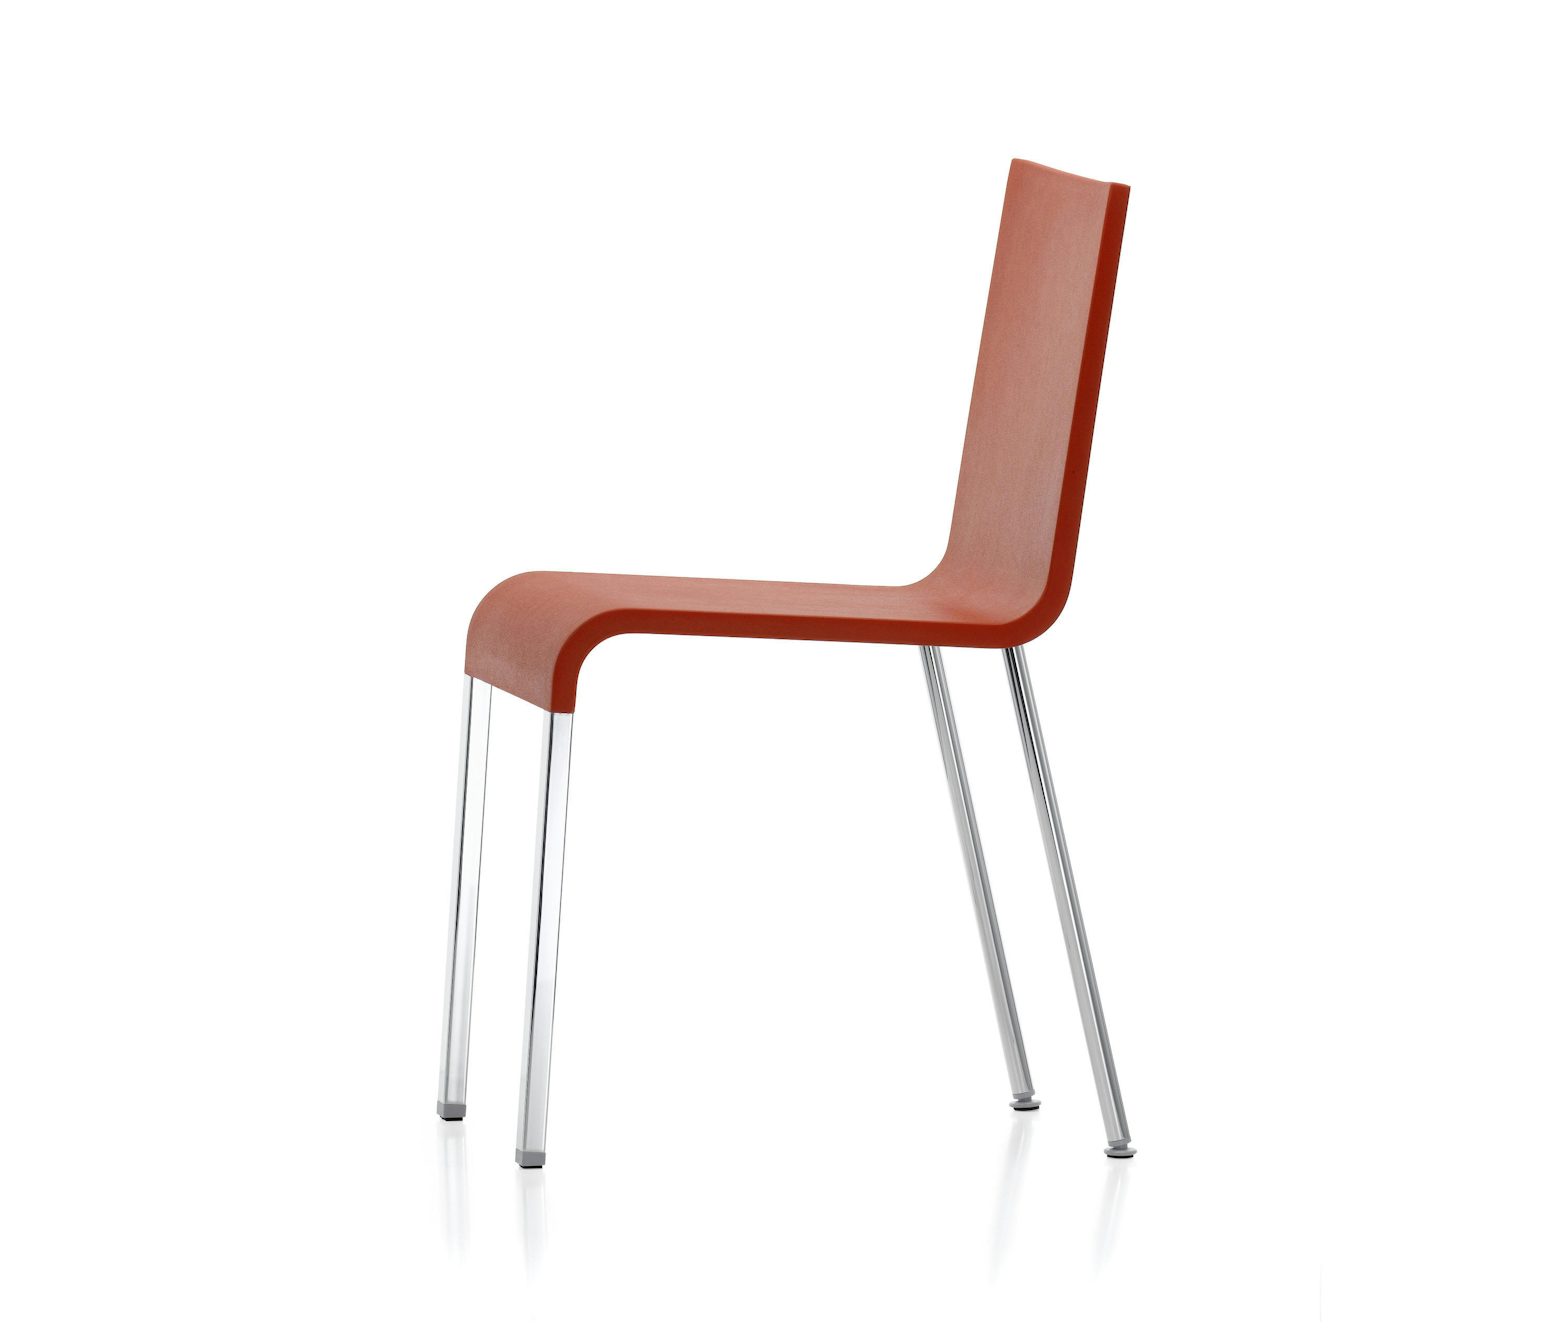 03-Chair-Vitra-2